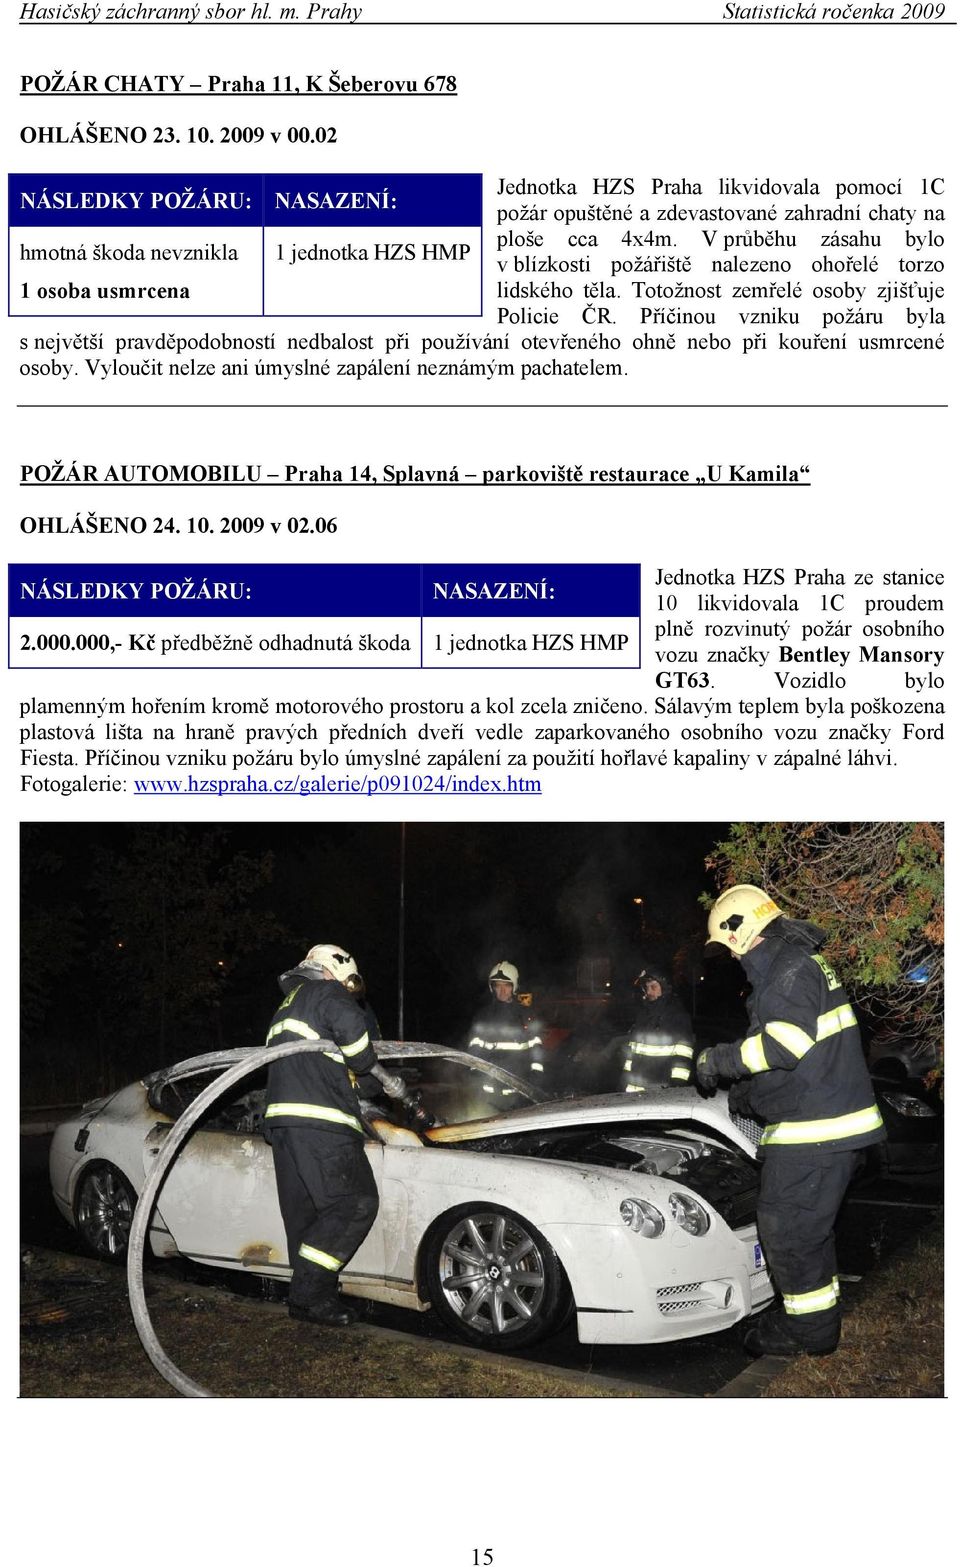 V průběhu zásahu bylo v blízkosti požářiště nalezeno ohořelé torzo lidského těla. Totožnost zemřelé osoby zjišťuje Policie ČR.